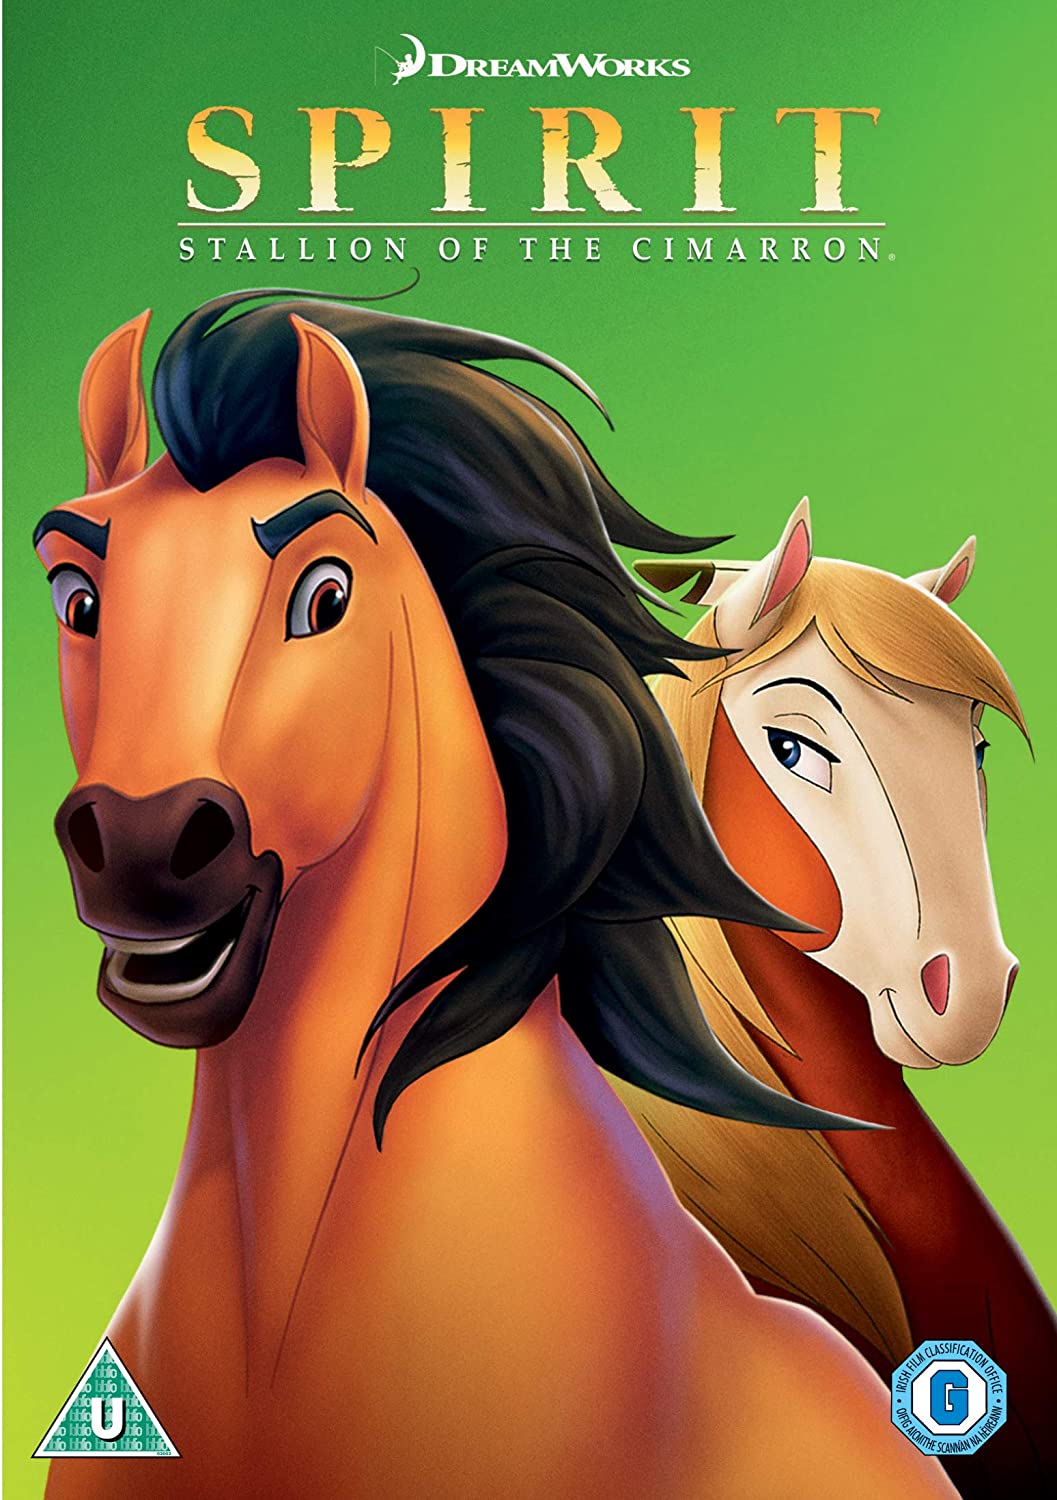 Spirit: Stallion of the Cimarron [2002] (Dreamworks) (DVD)